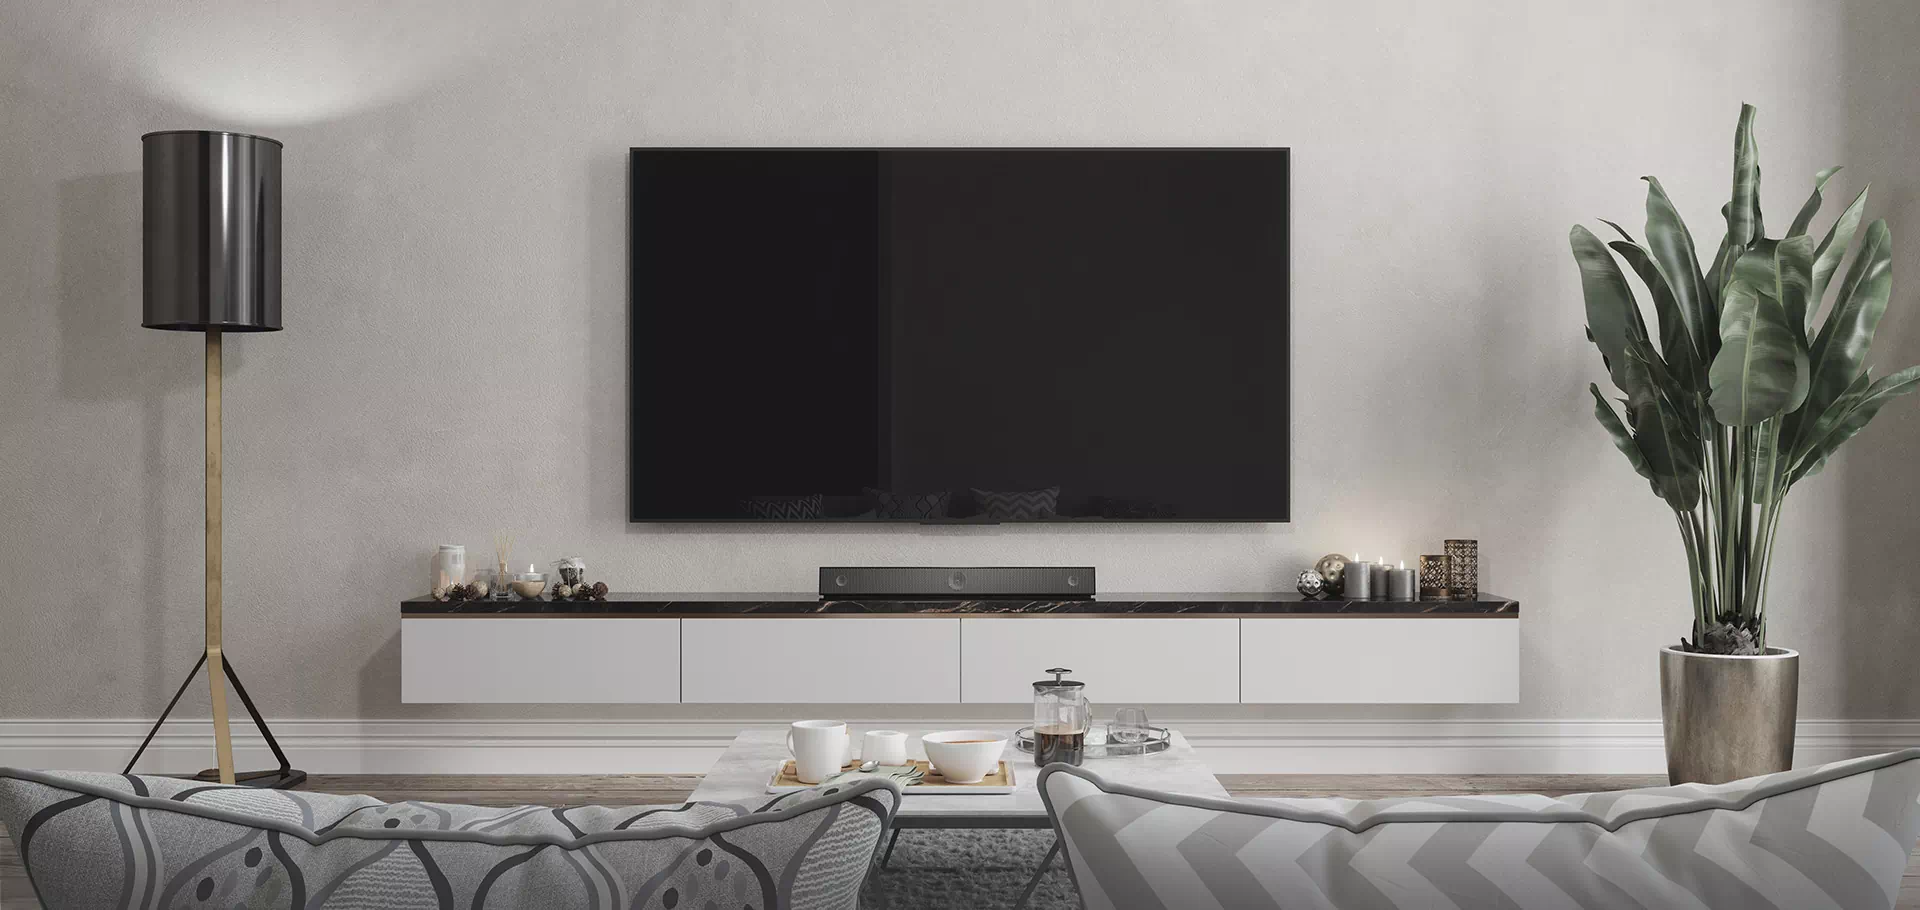 duży telewizor wiszący na ścianie